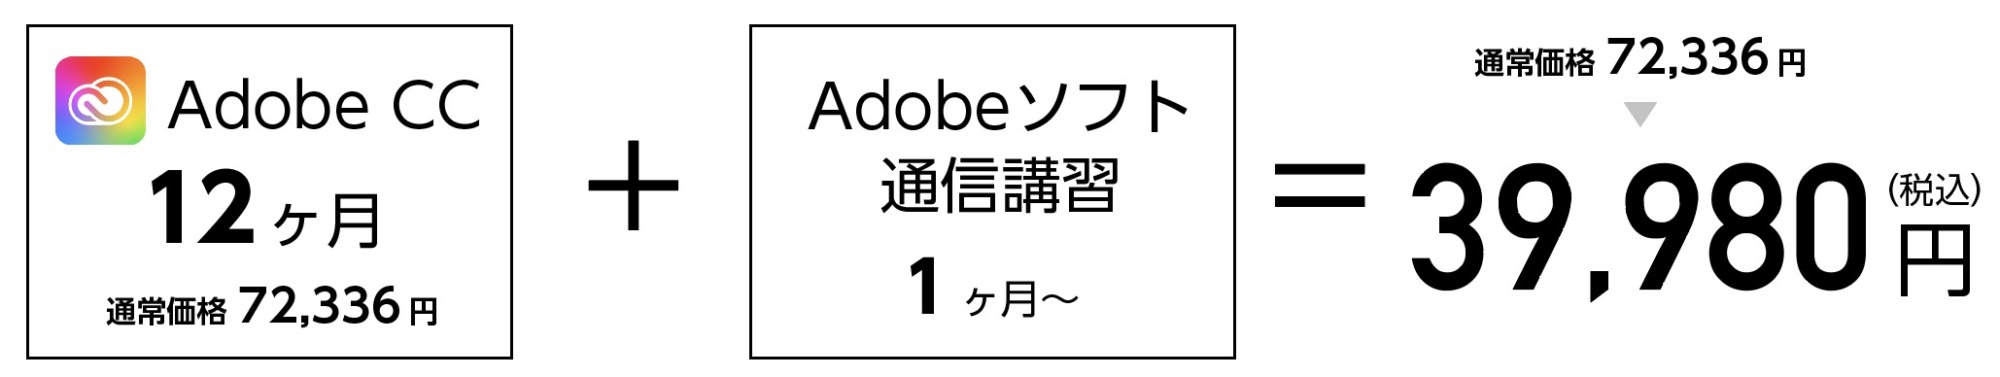 Adobe CCをほぼ半額で買う方法